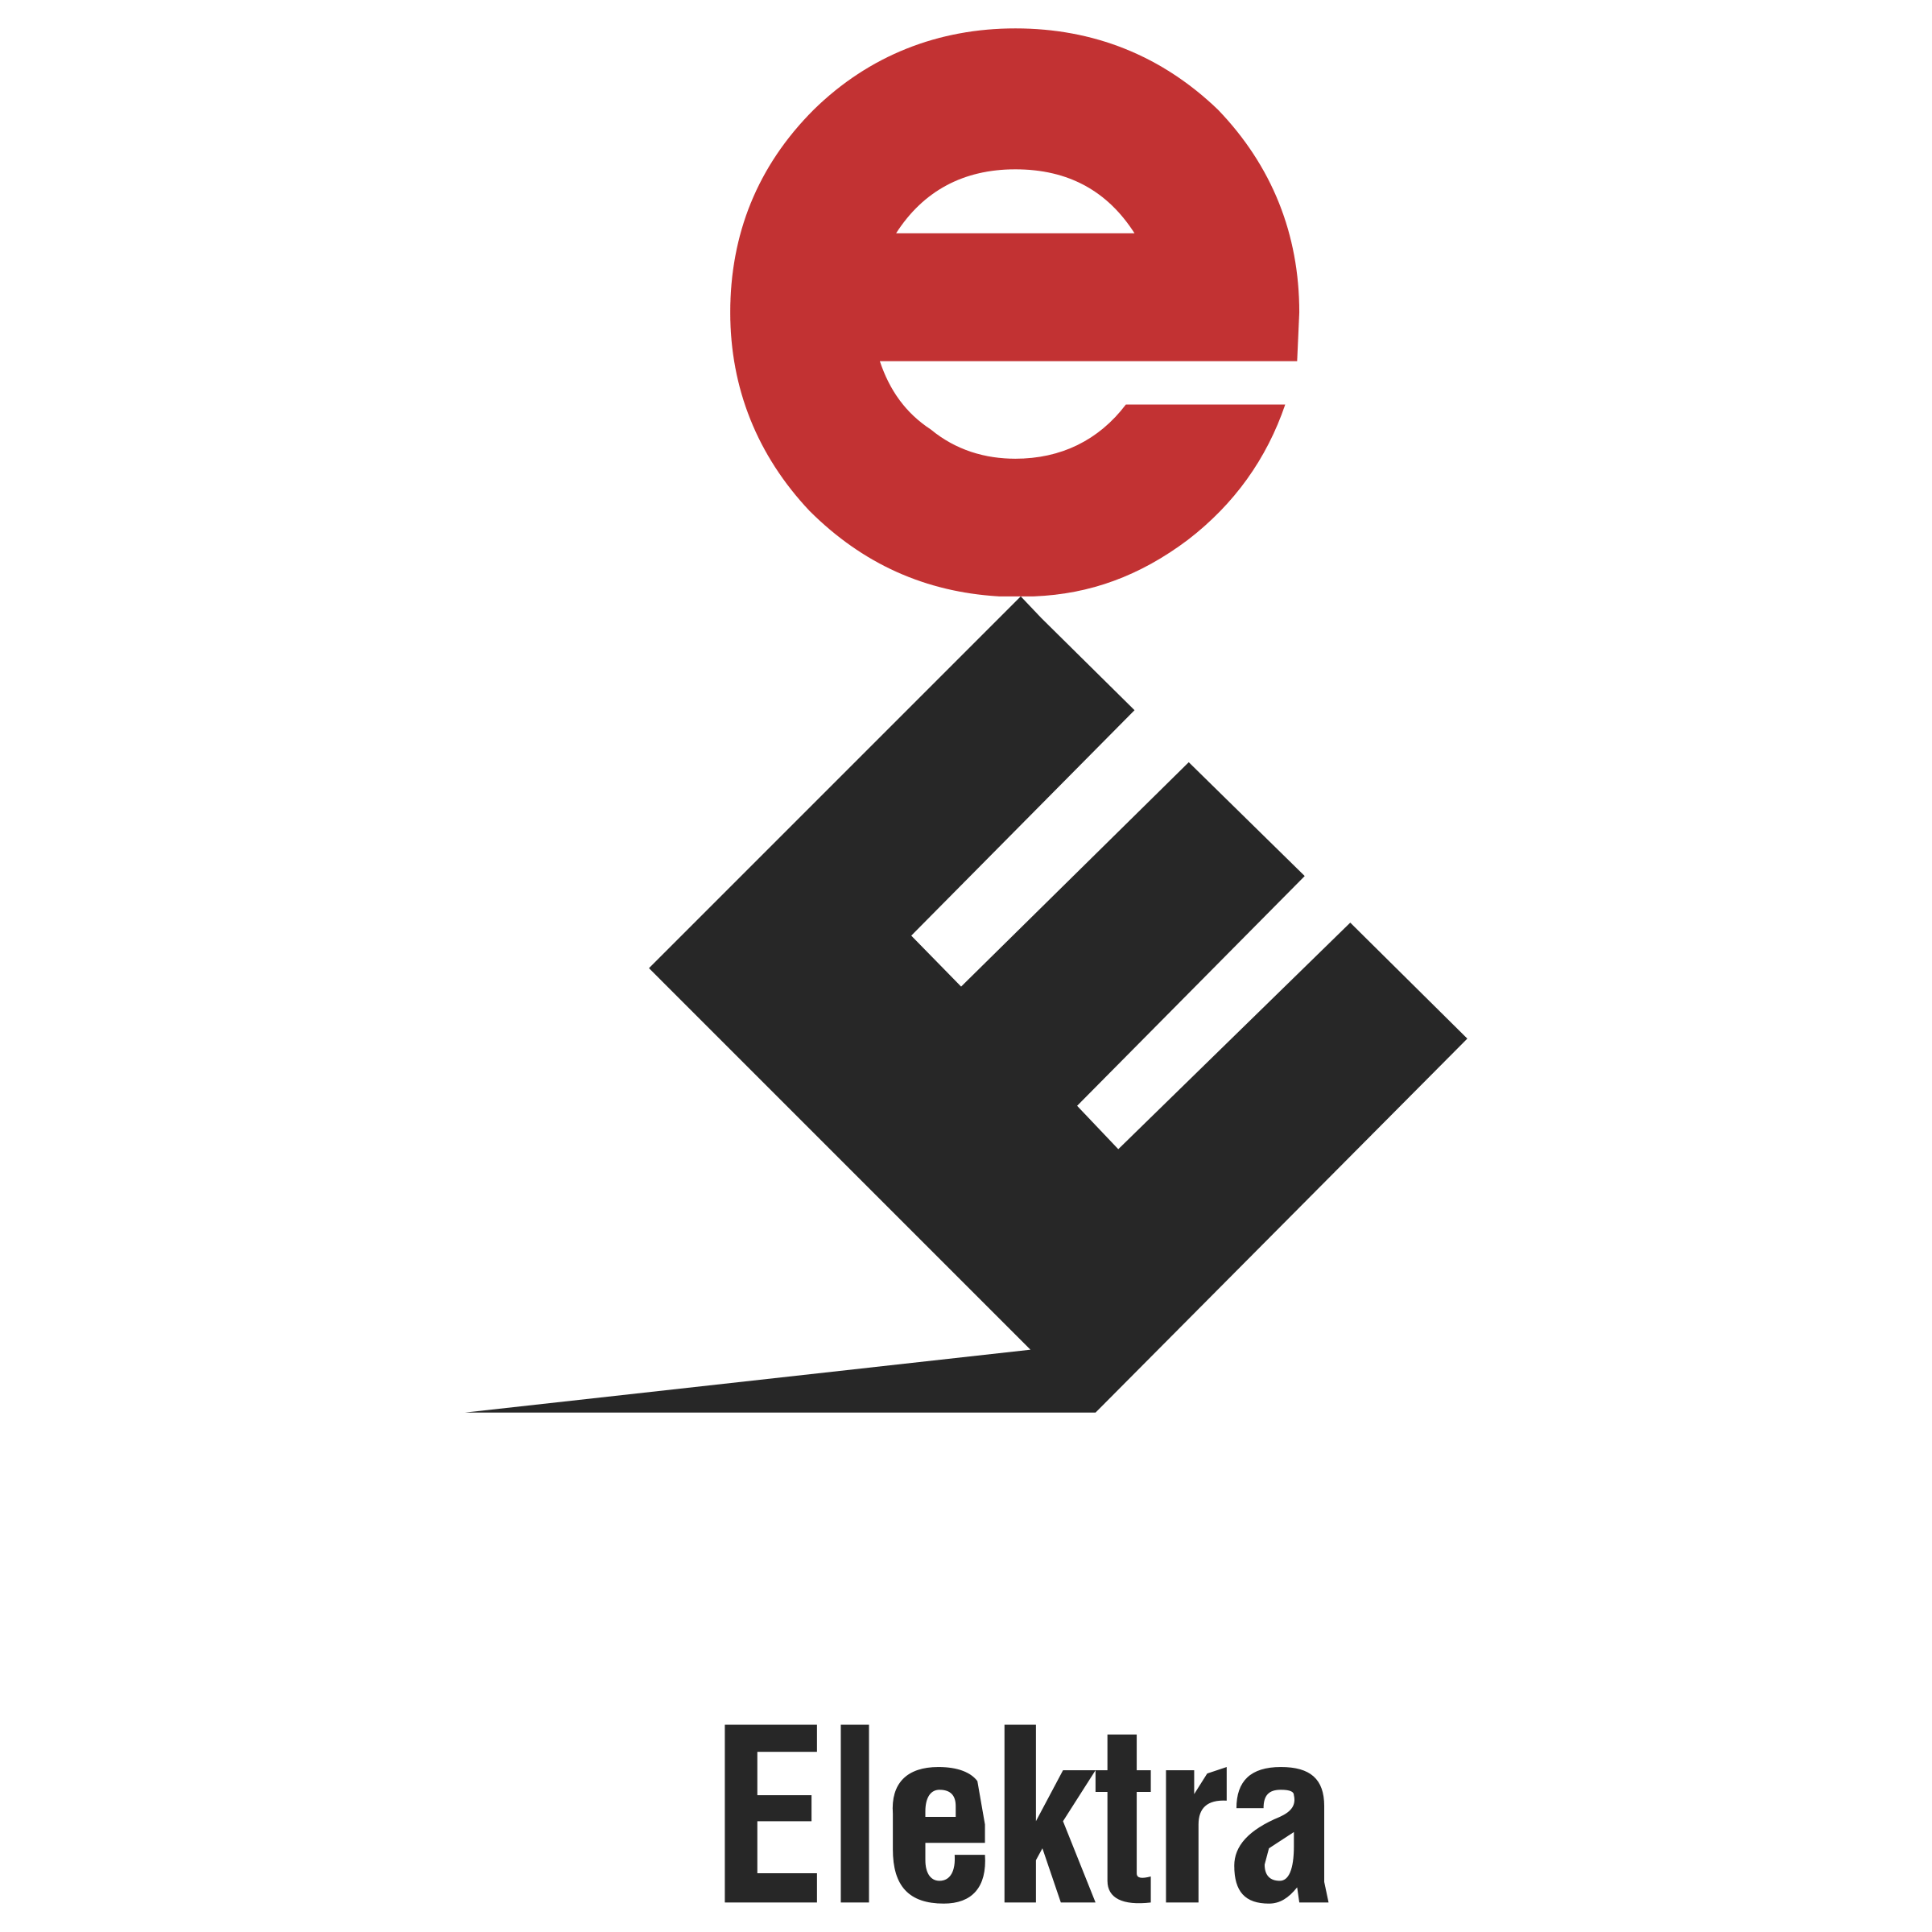 Elektra Logo - Elektra Records Logo PNG Transparent & SVG Vector